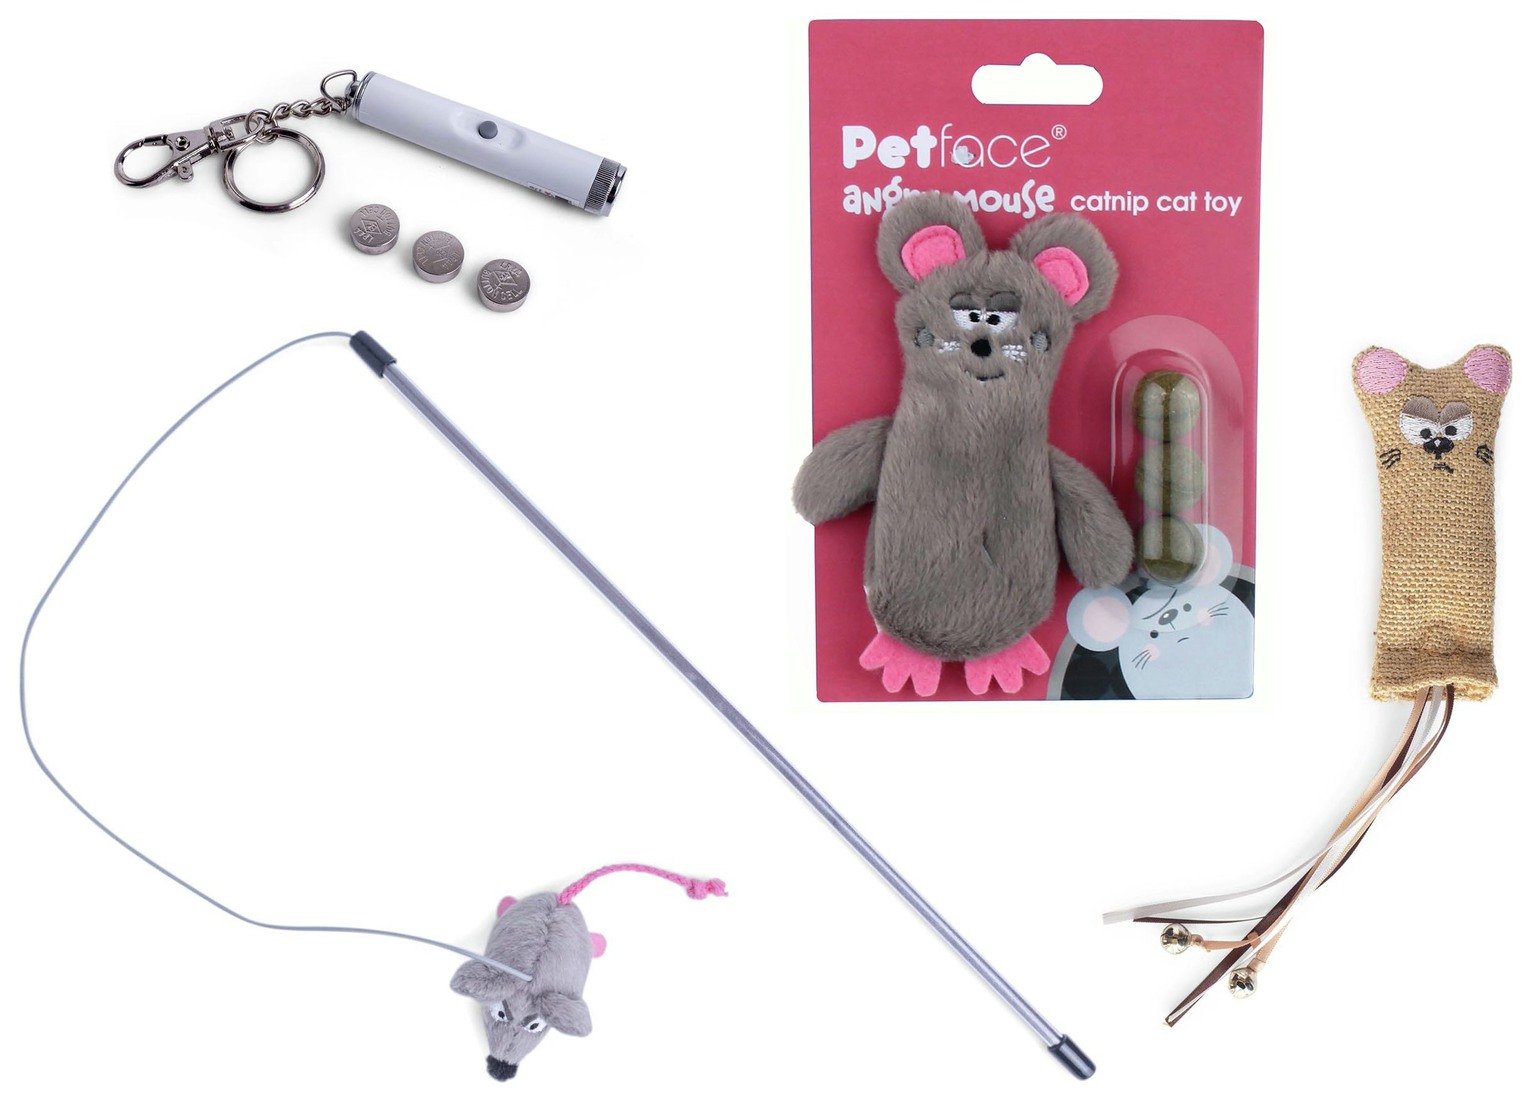 Petface Cat Toy Bundle review